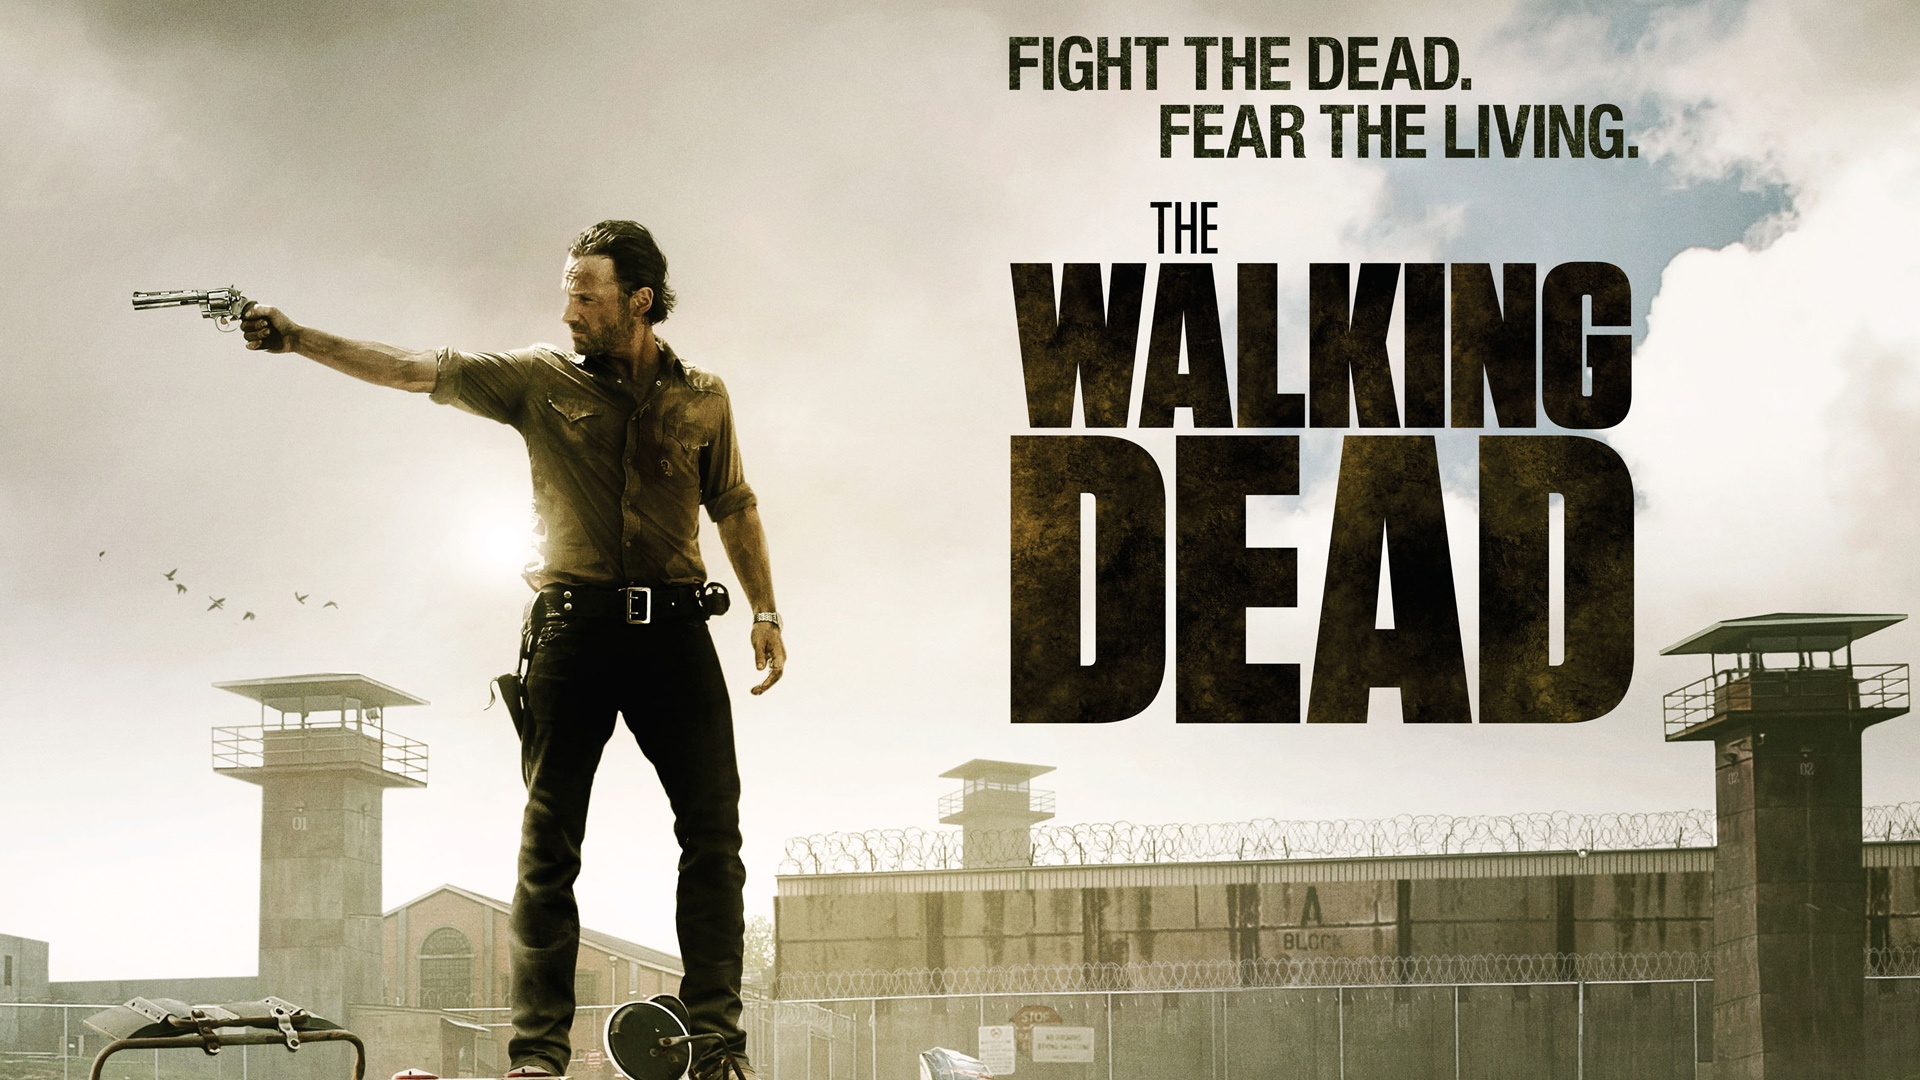 The Walking Dead Wallpaper HD   downloadwallpaperorg